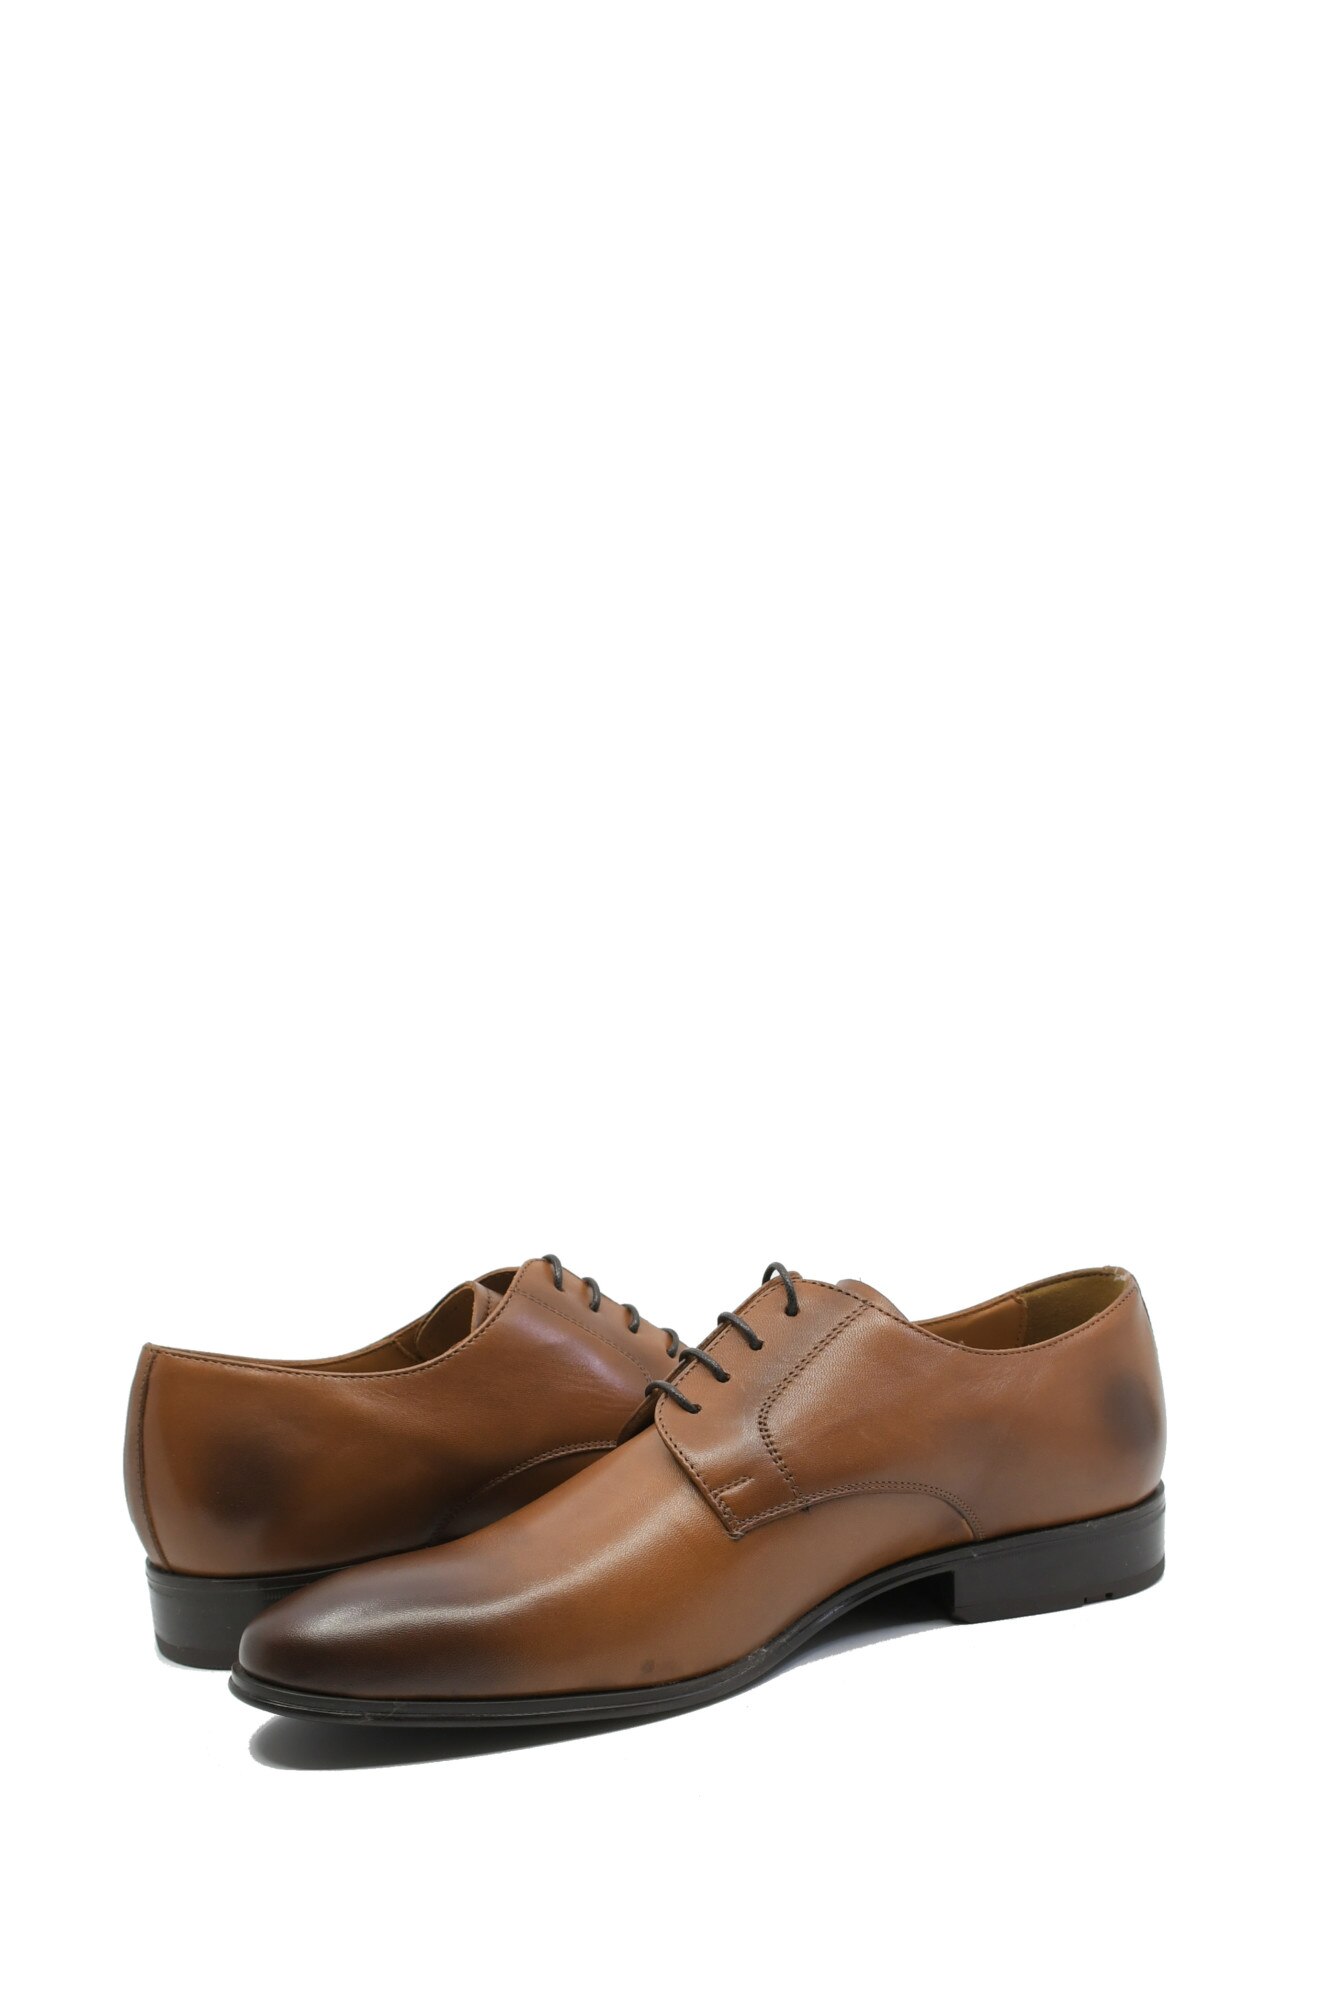 Specified Perth Perennial Pantofi taba eleganti pentru barbati din piele naturala-43 EU - eMAG.ro